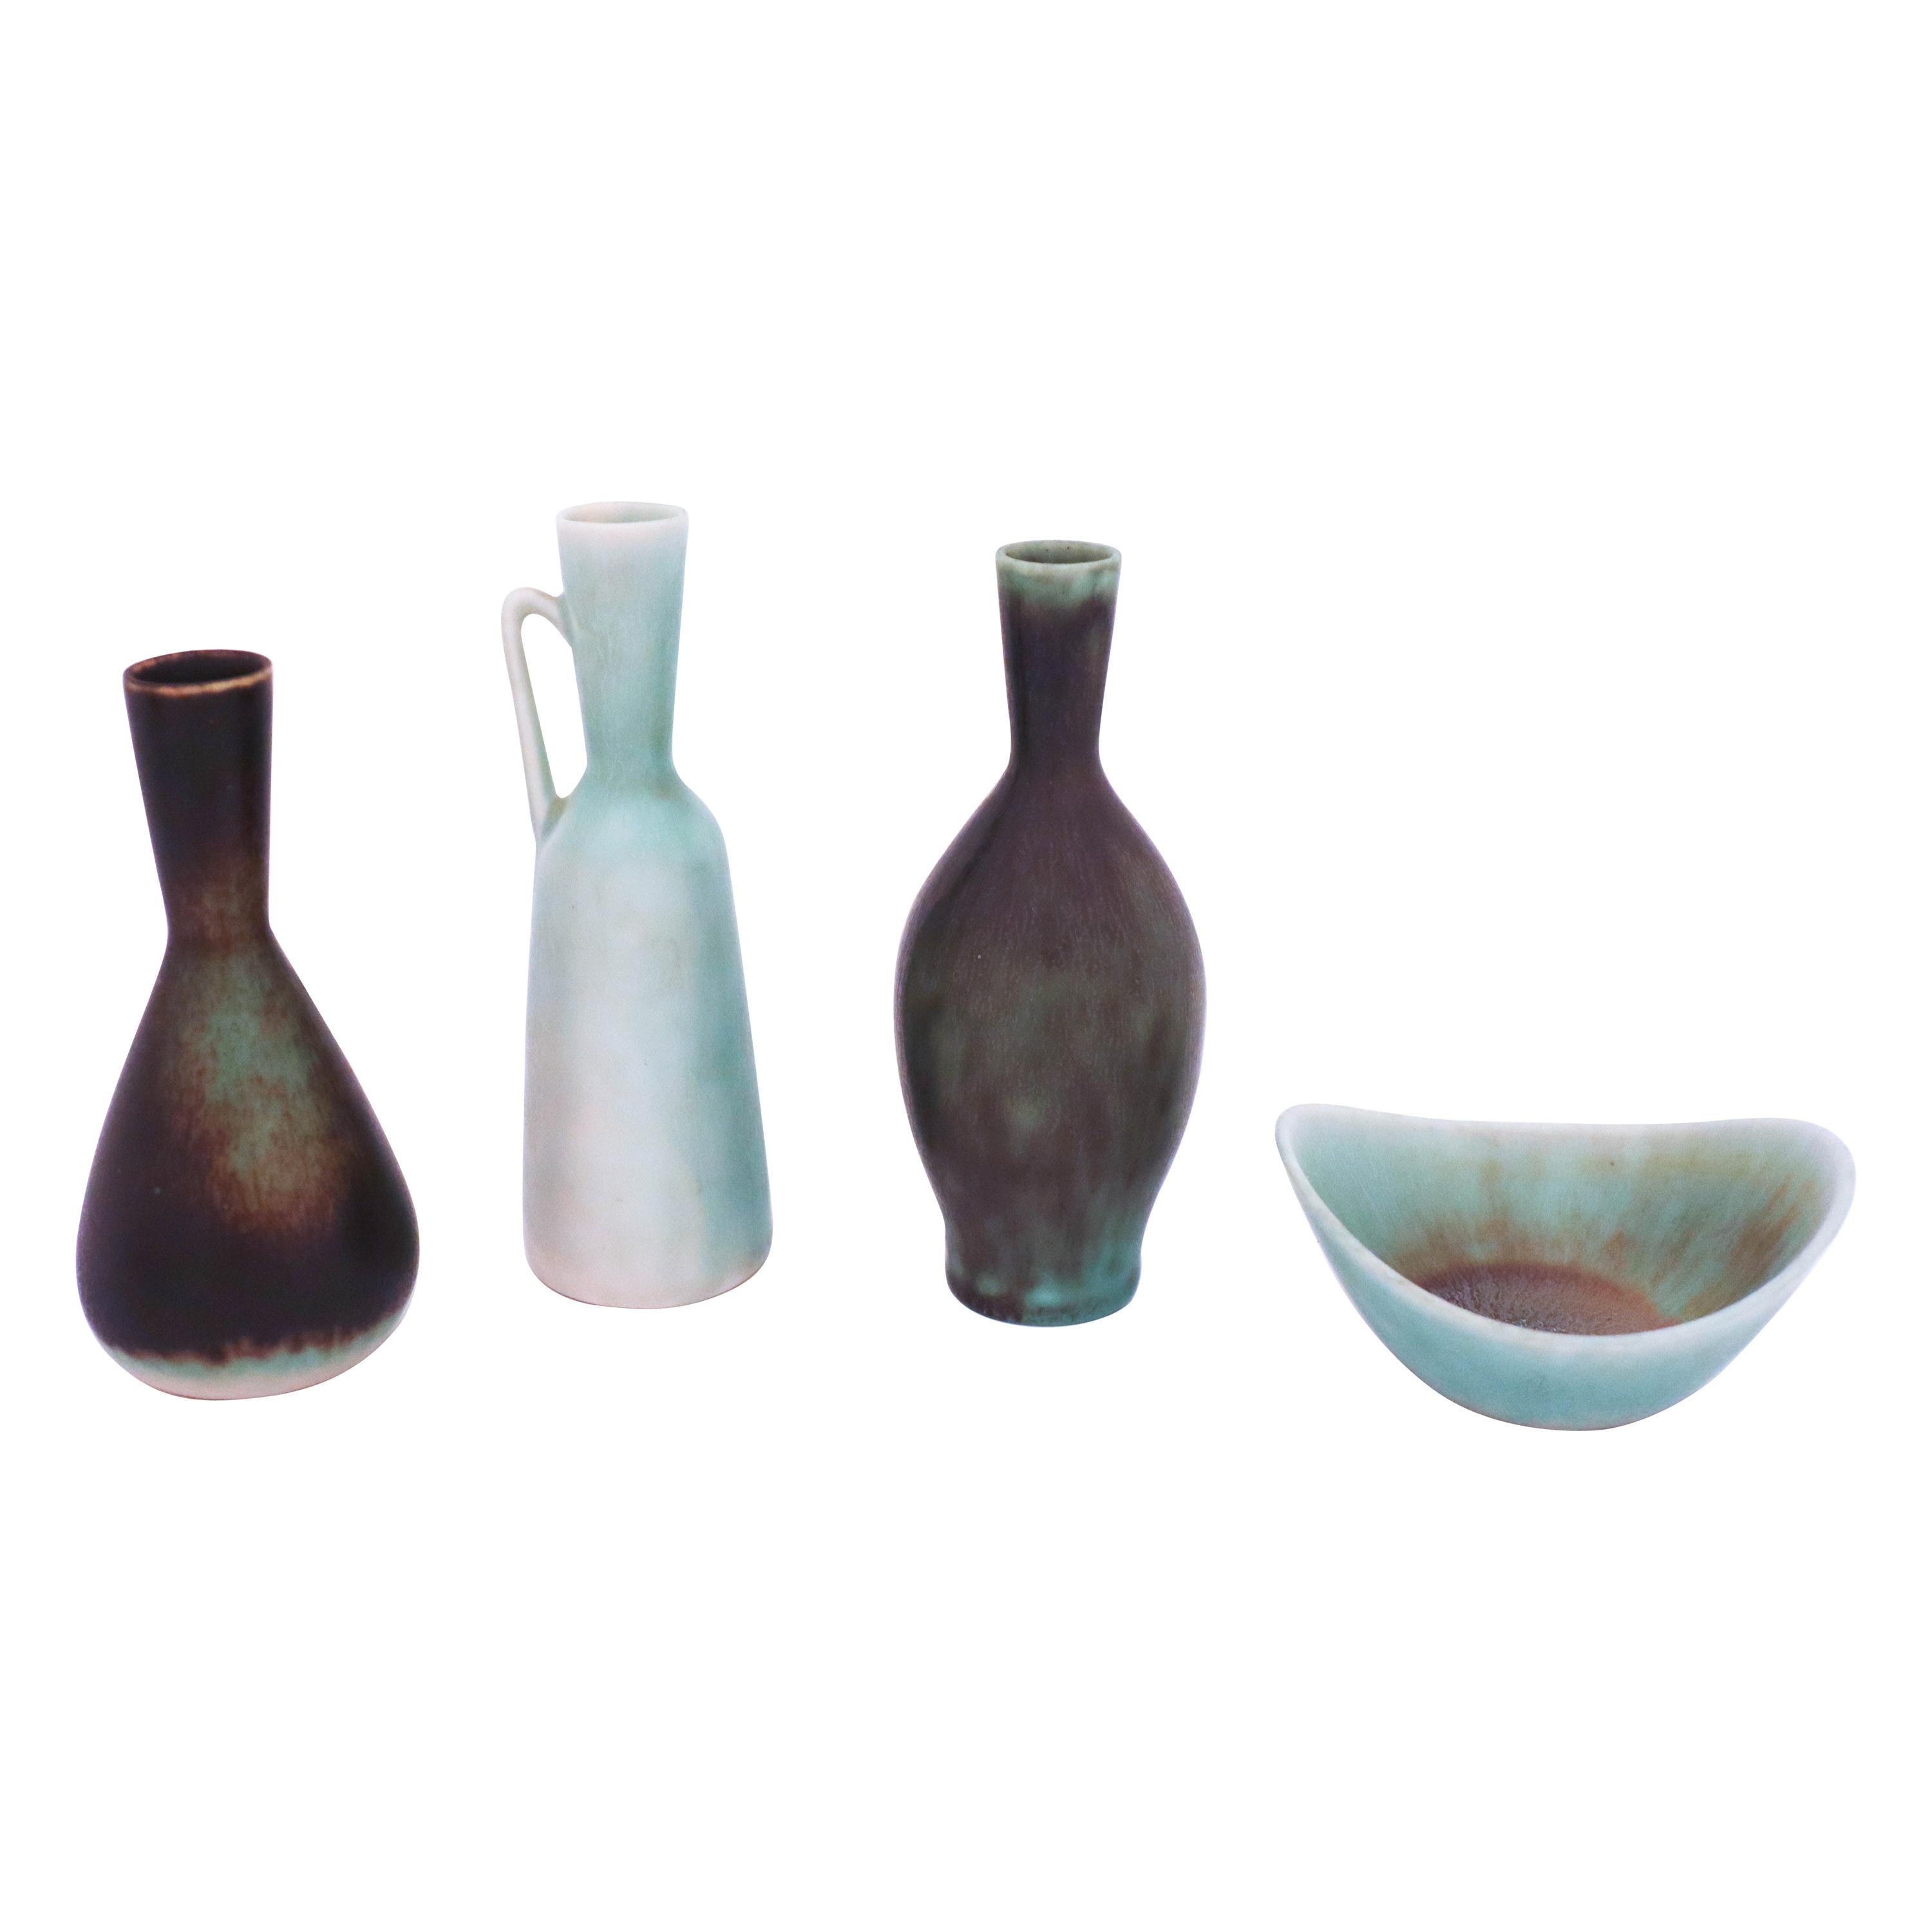 Group of 4 Stoneware Vases, Carl-Harry Stålhane, Rörstrand, 1950s